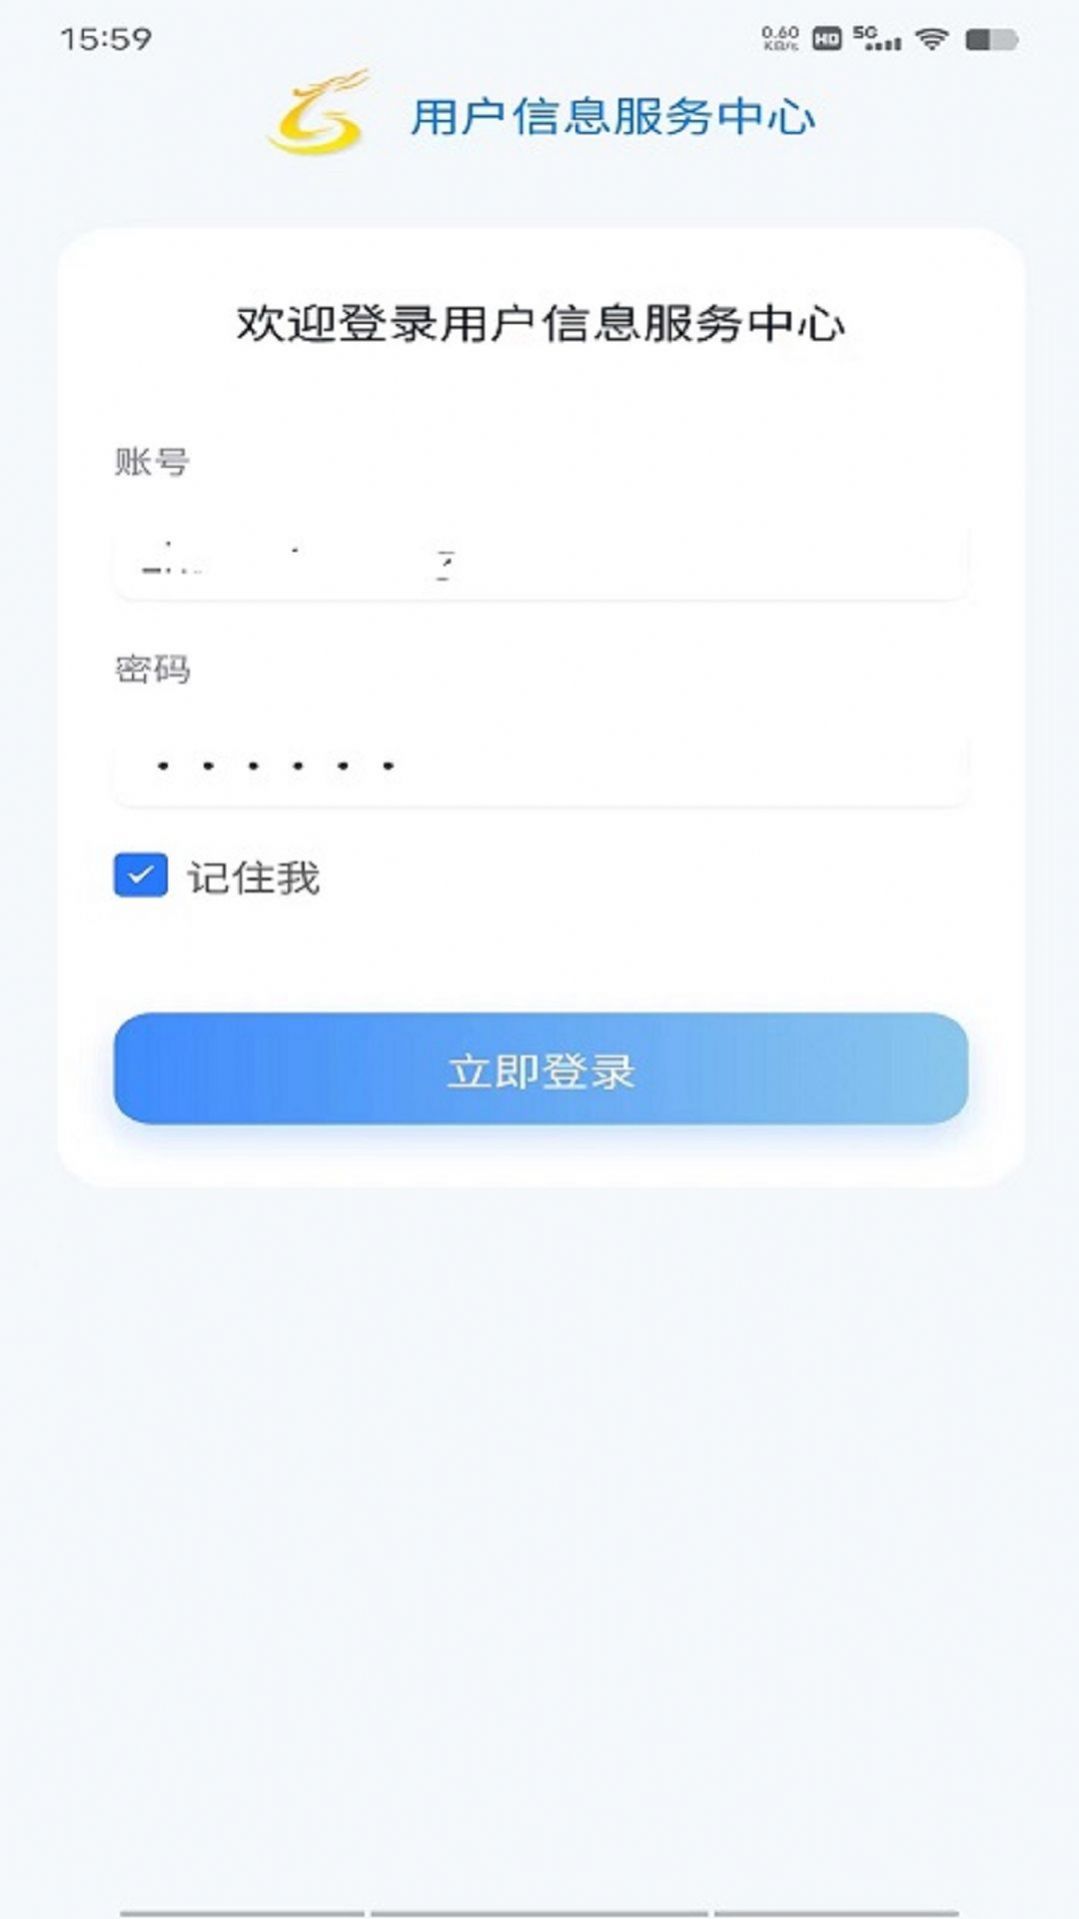 龙凤山用户信息服务中心app图片1